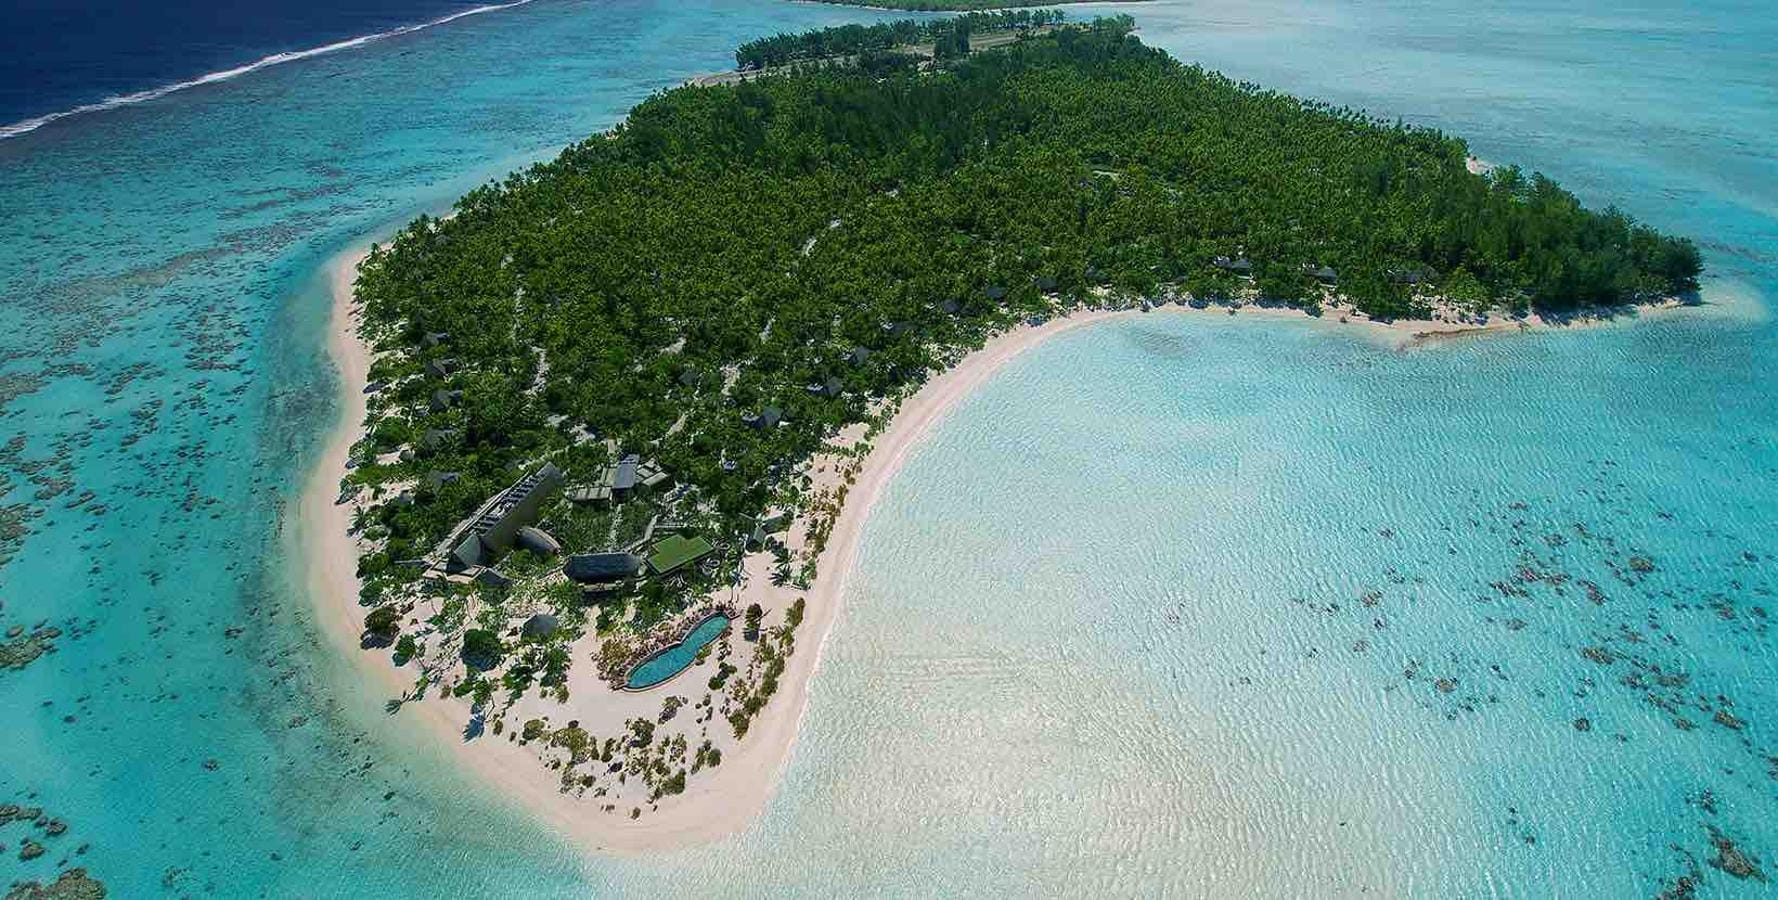 The Brando's. Se encuentra concretamente 30 millas noreste de la isla de Tahití y es el resort ecológico más exclusivo del mundo